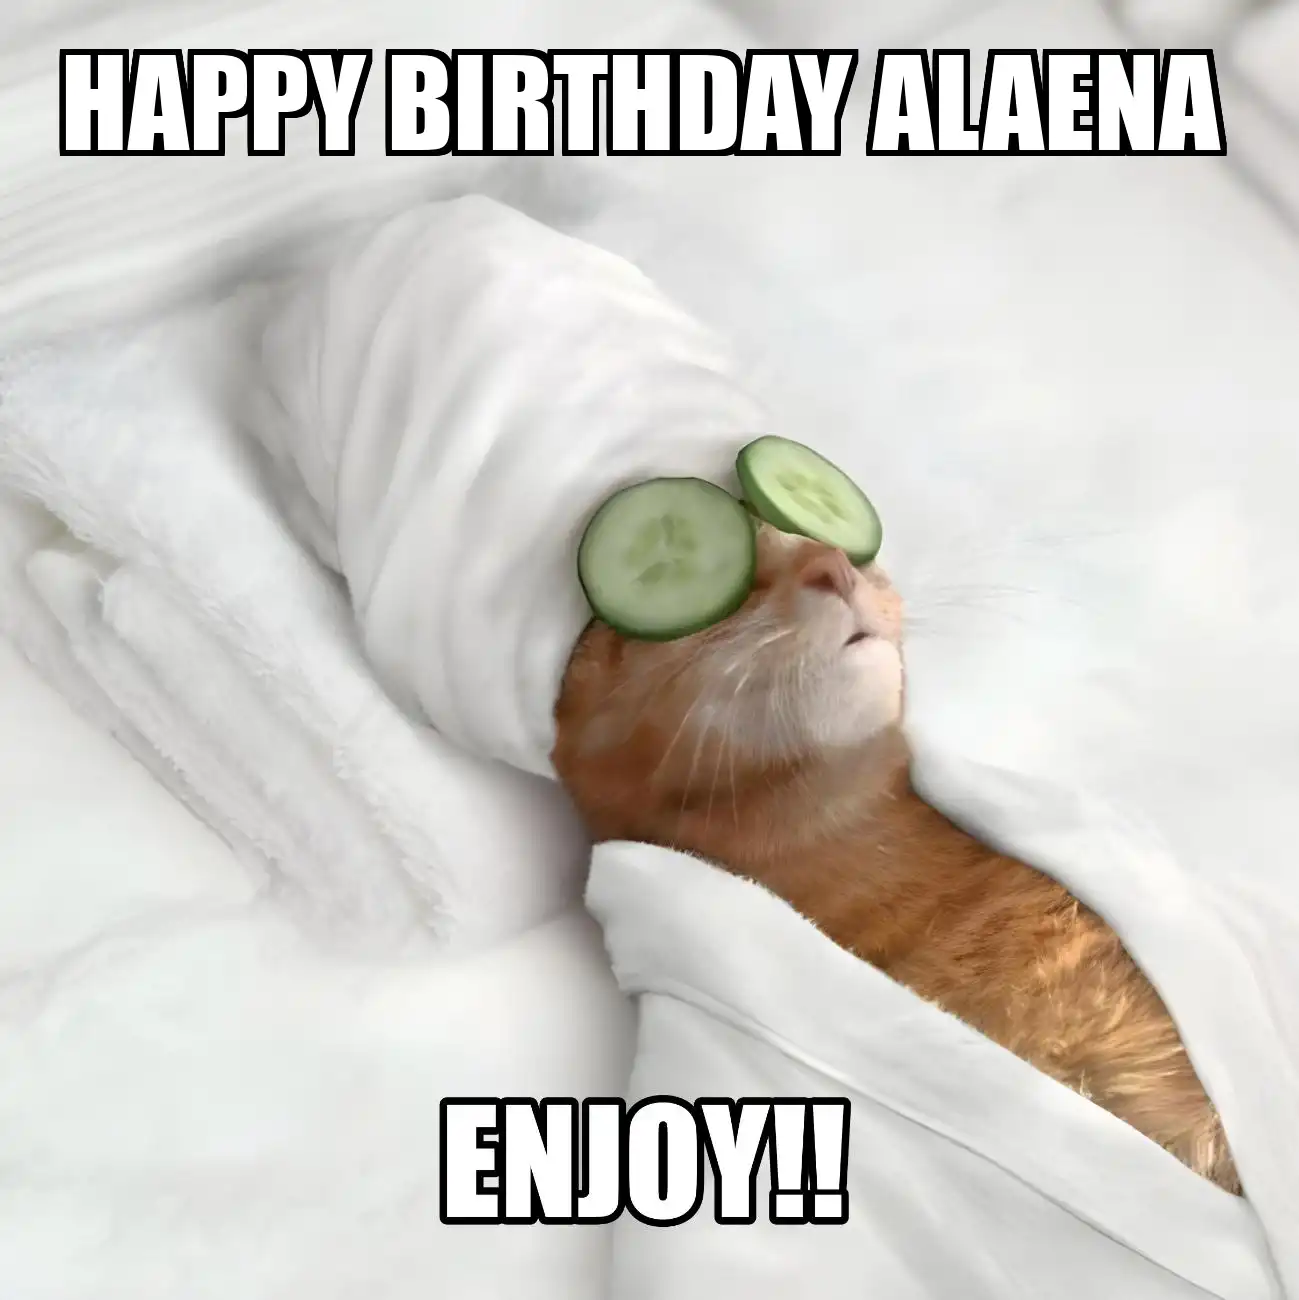 Happy Birthday Alaena Enjoy Cat Meme